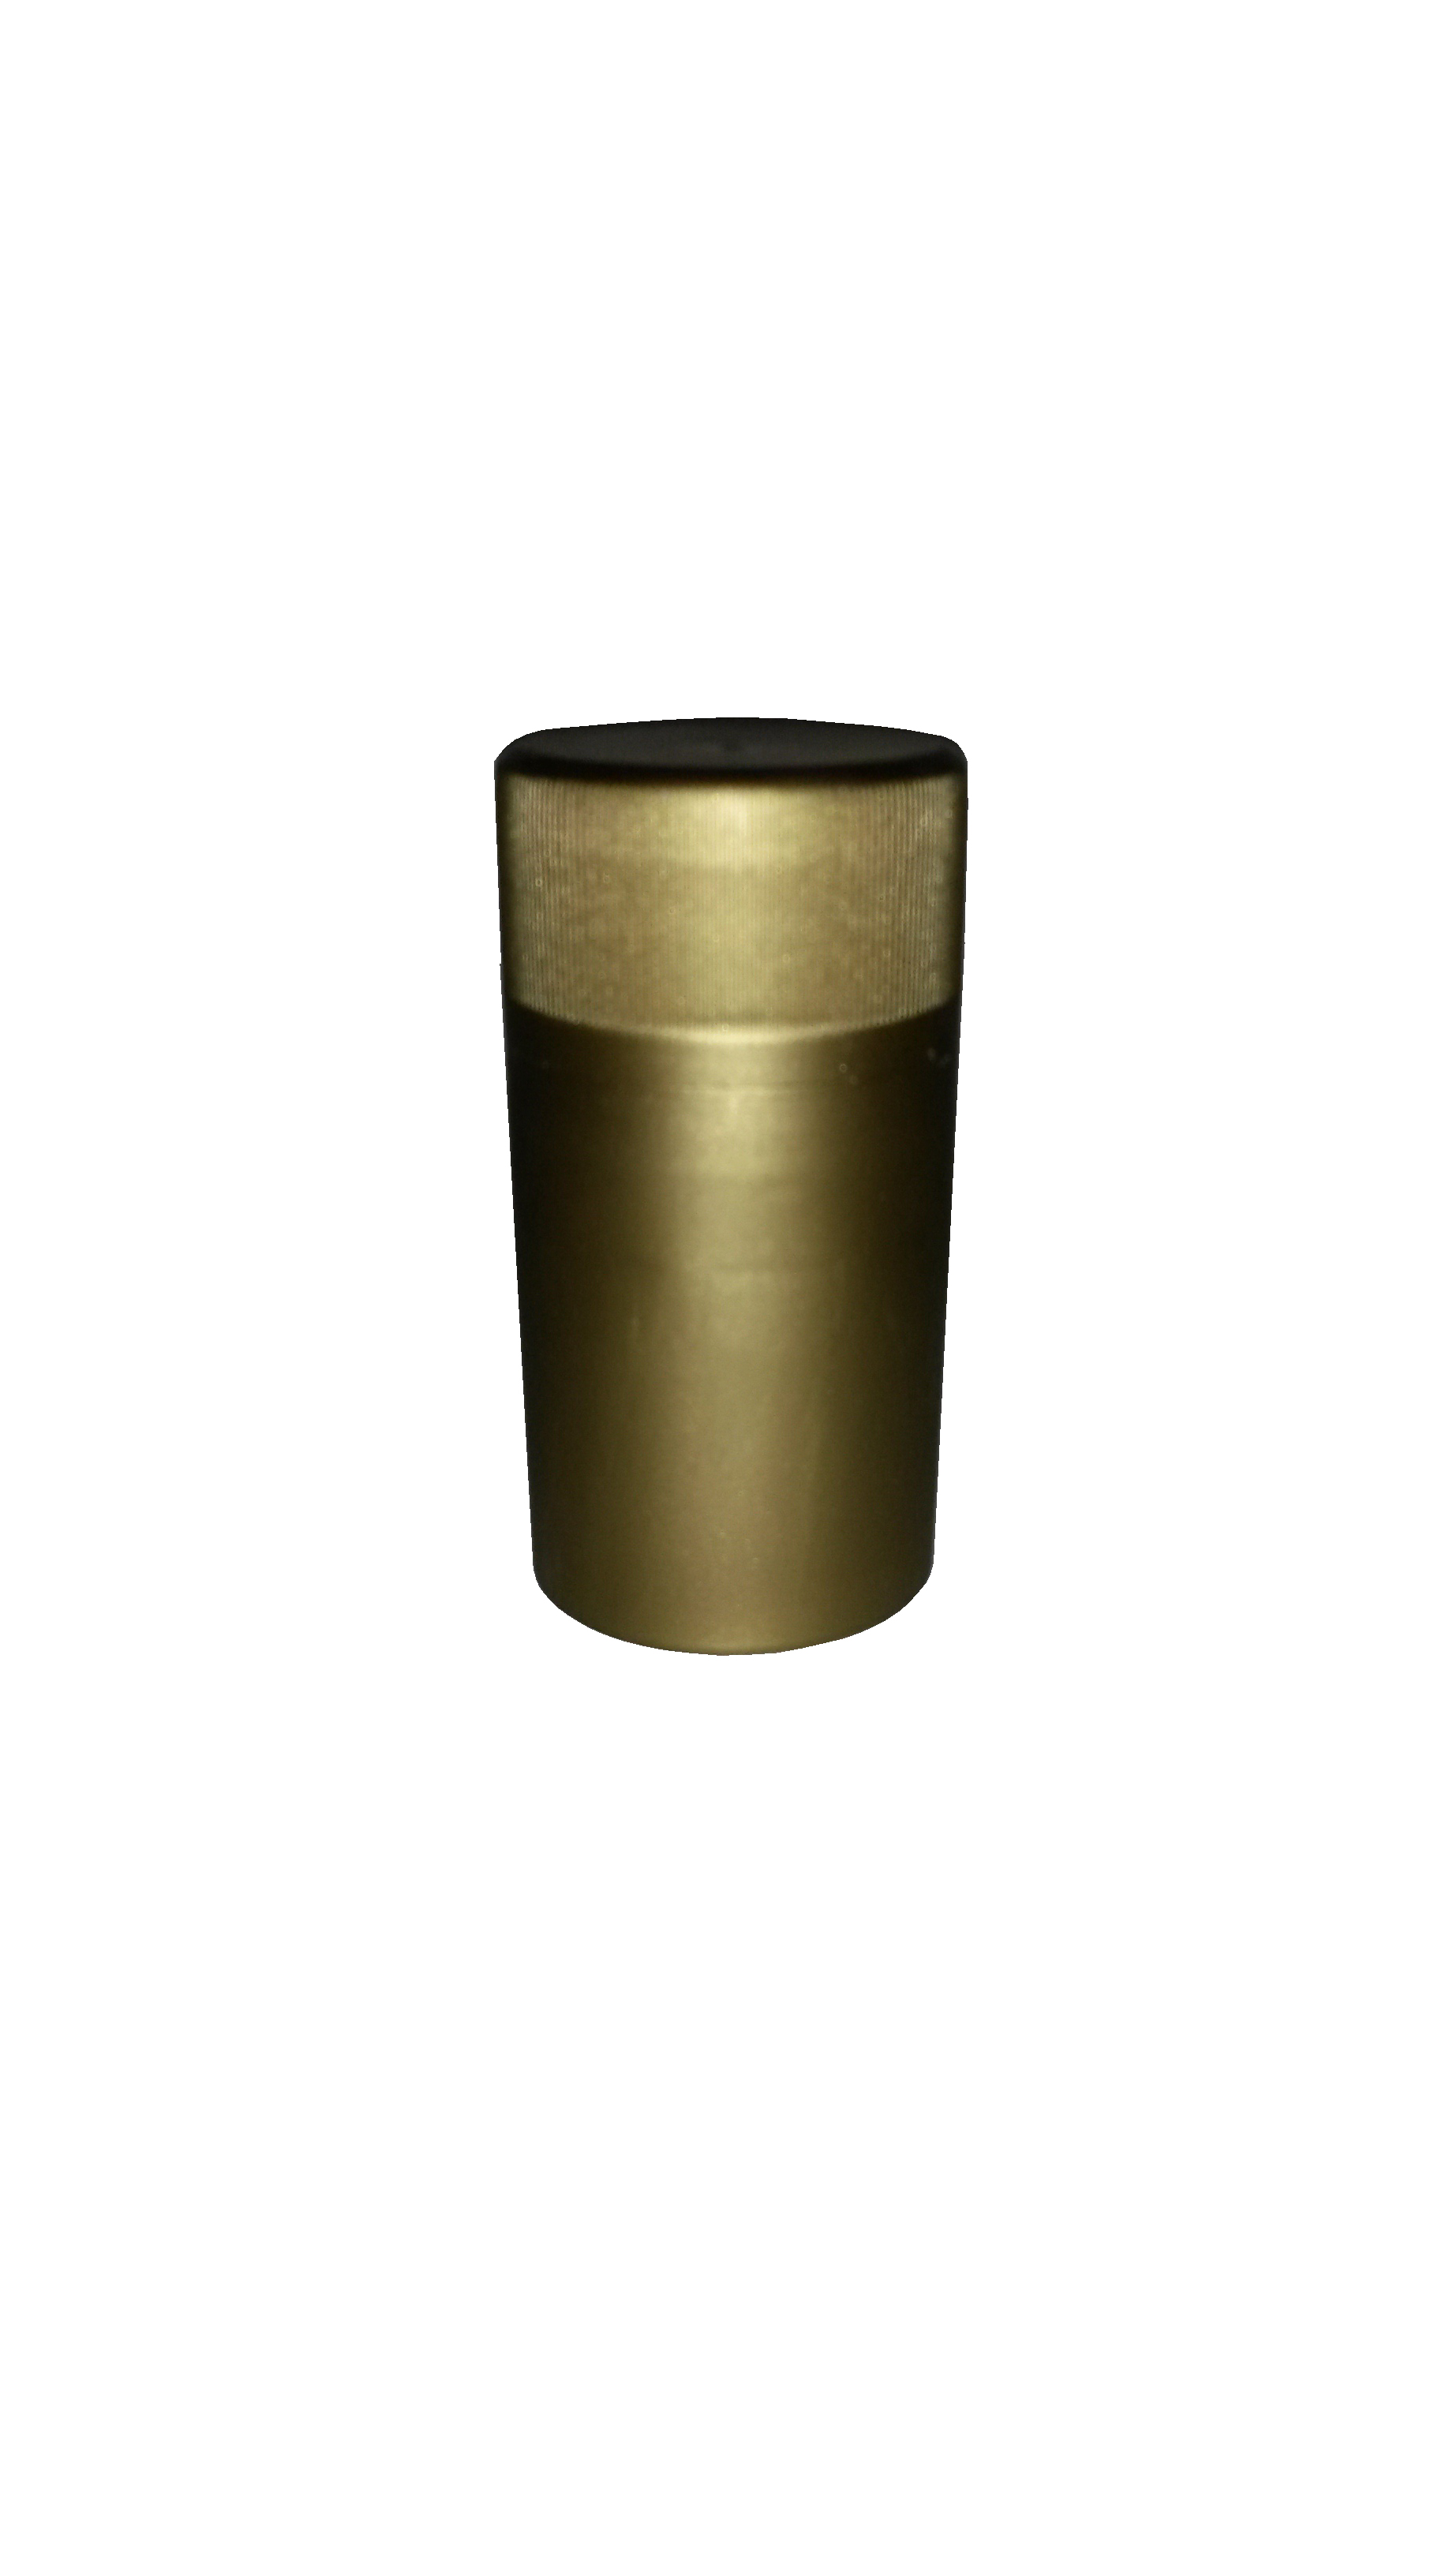 Novatwist Kunststoff BVS-Verschluss 30/60 gold, matt mit innenliegendem Gewinde